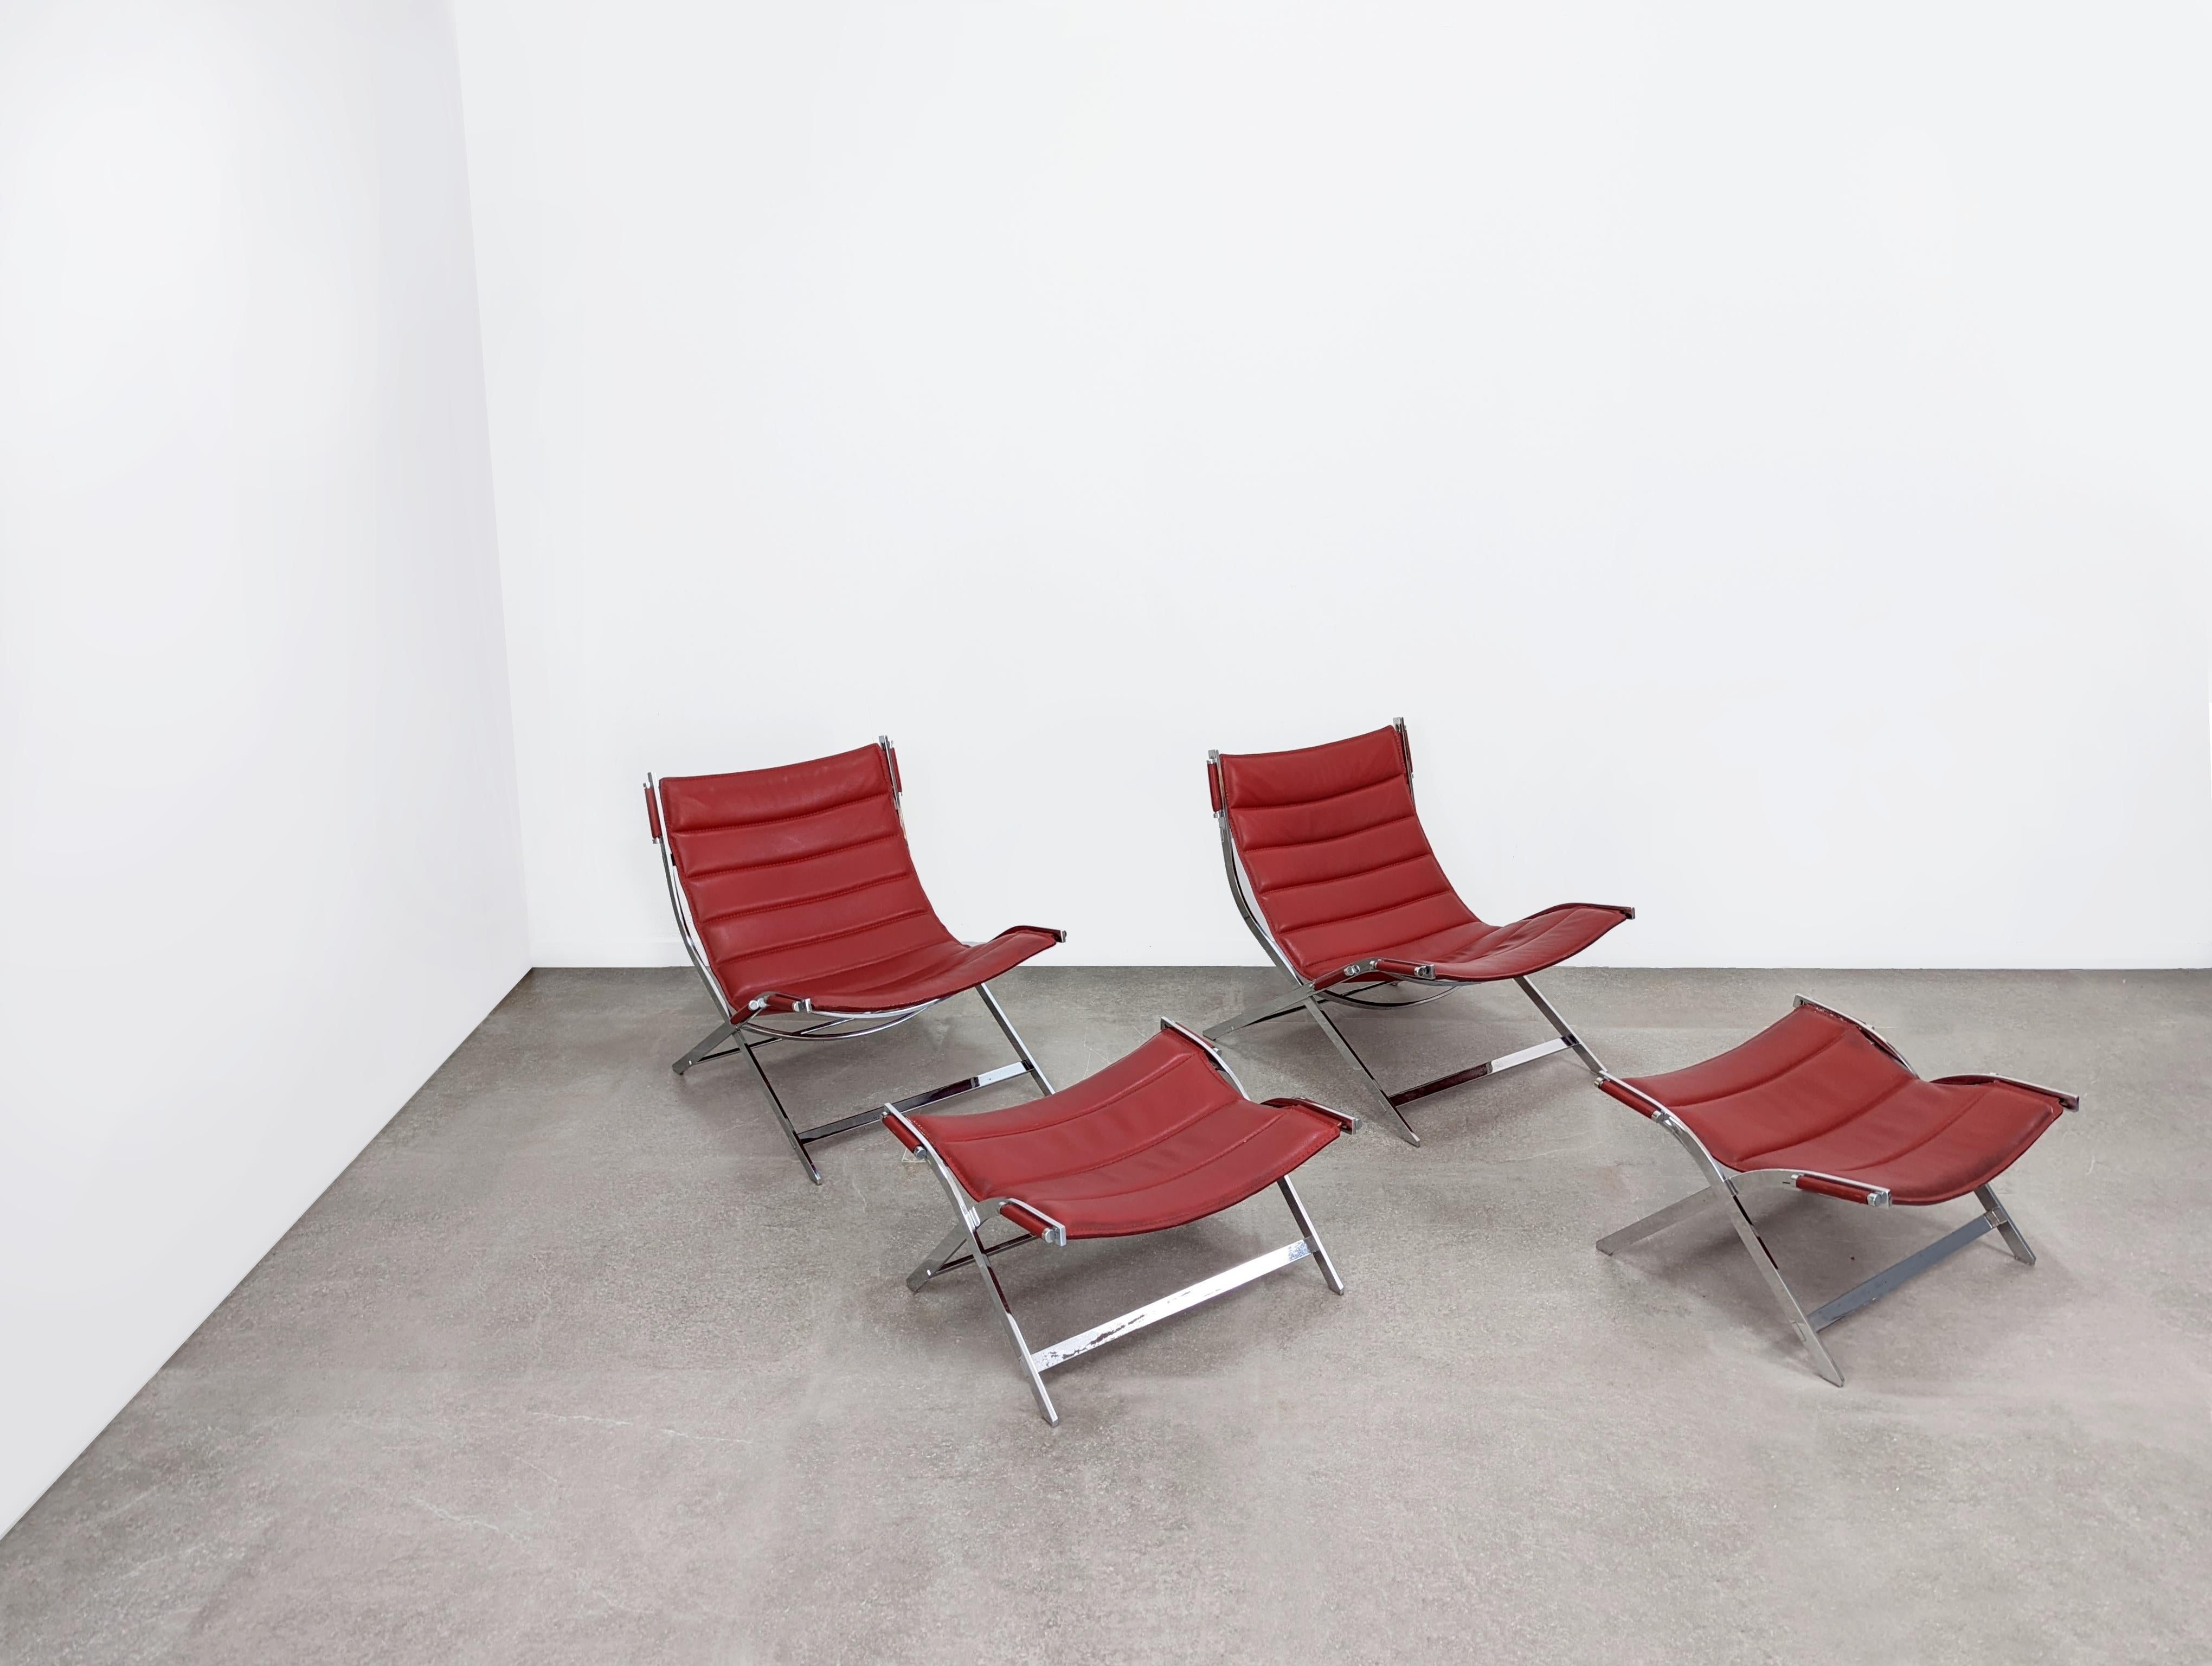 Spectaculaire paire de fauteuils de style Paul Tuttle avec repose-pieds.

Dimensions : Fauteuil 67 x 75 x 80 cm - Repose-pieds : 65 x 55 x 37 cm.